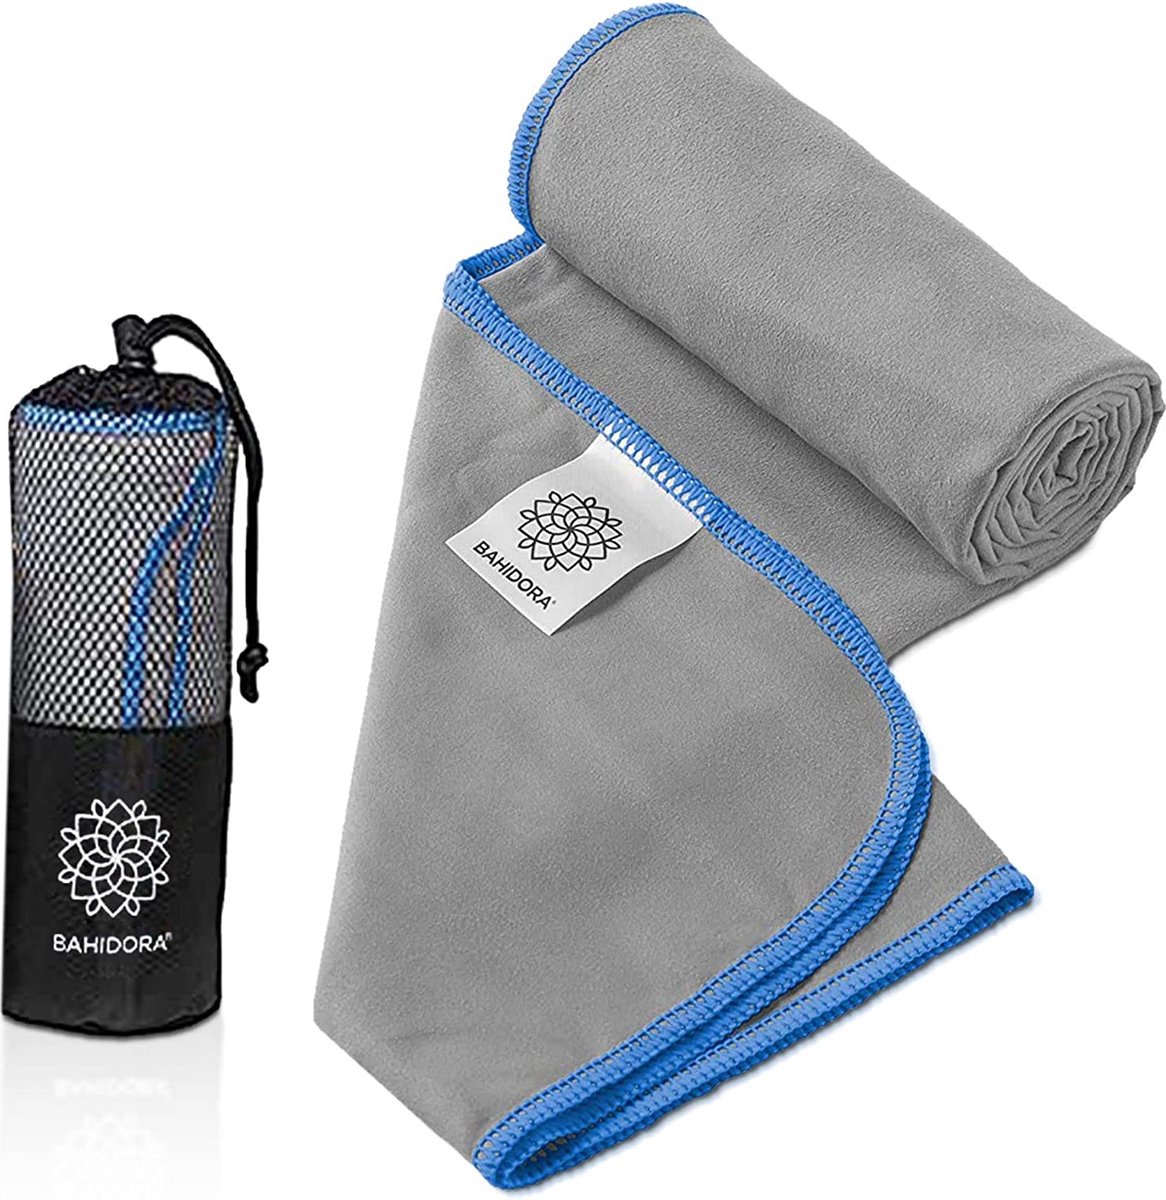 Bahidora® Microvezel handdoek in 16 kleuren, sneldrogende reishanddoek met zakje en ophanglus, ultralichte en compacte outdoor handdoek (set 40x80 cm + 80x160 cm, grijs/blauw)